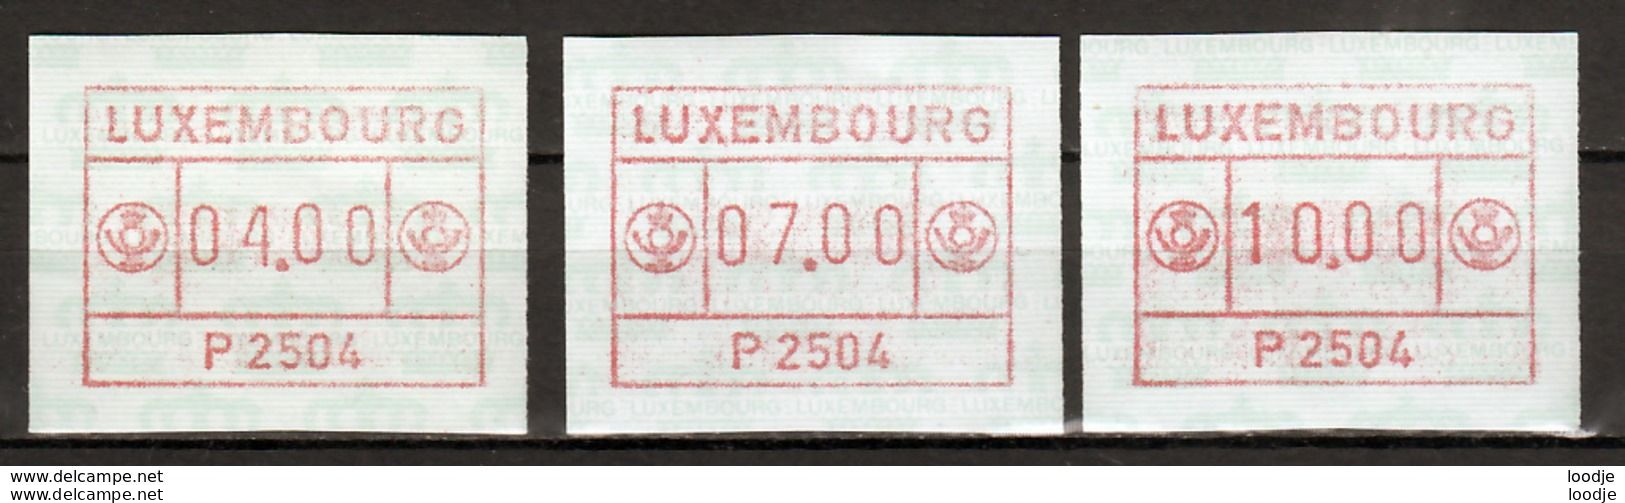 Luxemburg Automaatzegels Mi 1 Div. Postfris - Vignettes D'affranchissement